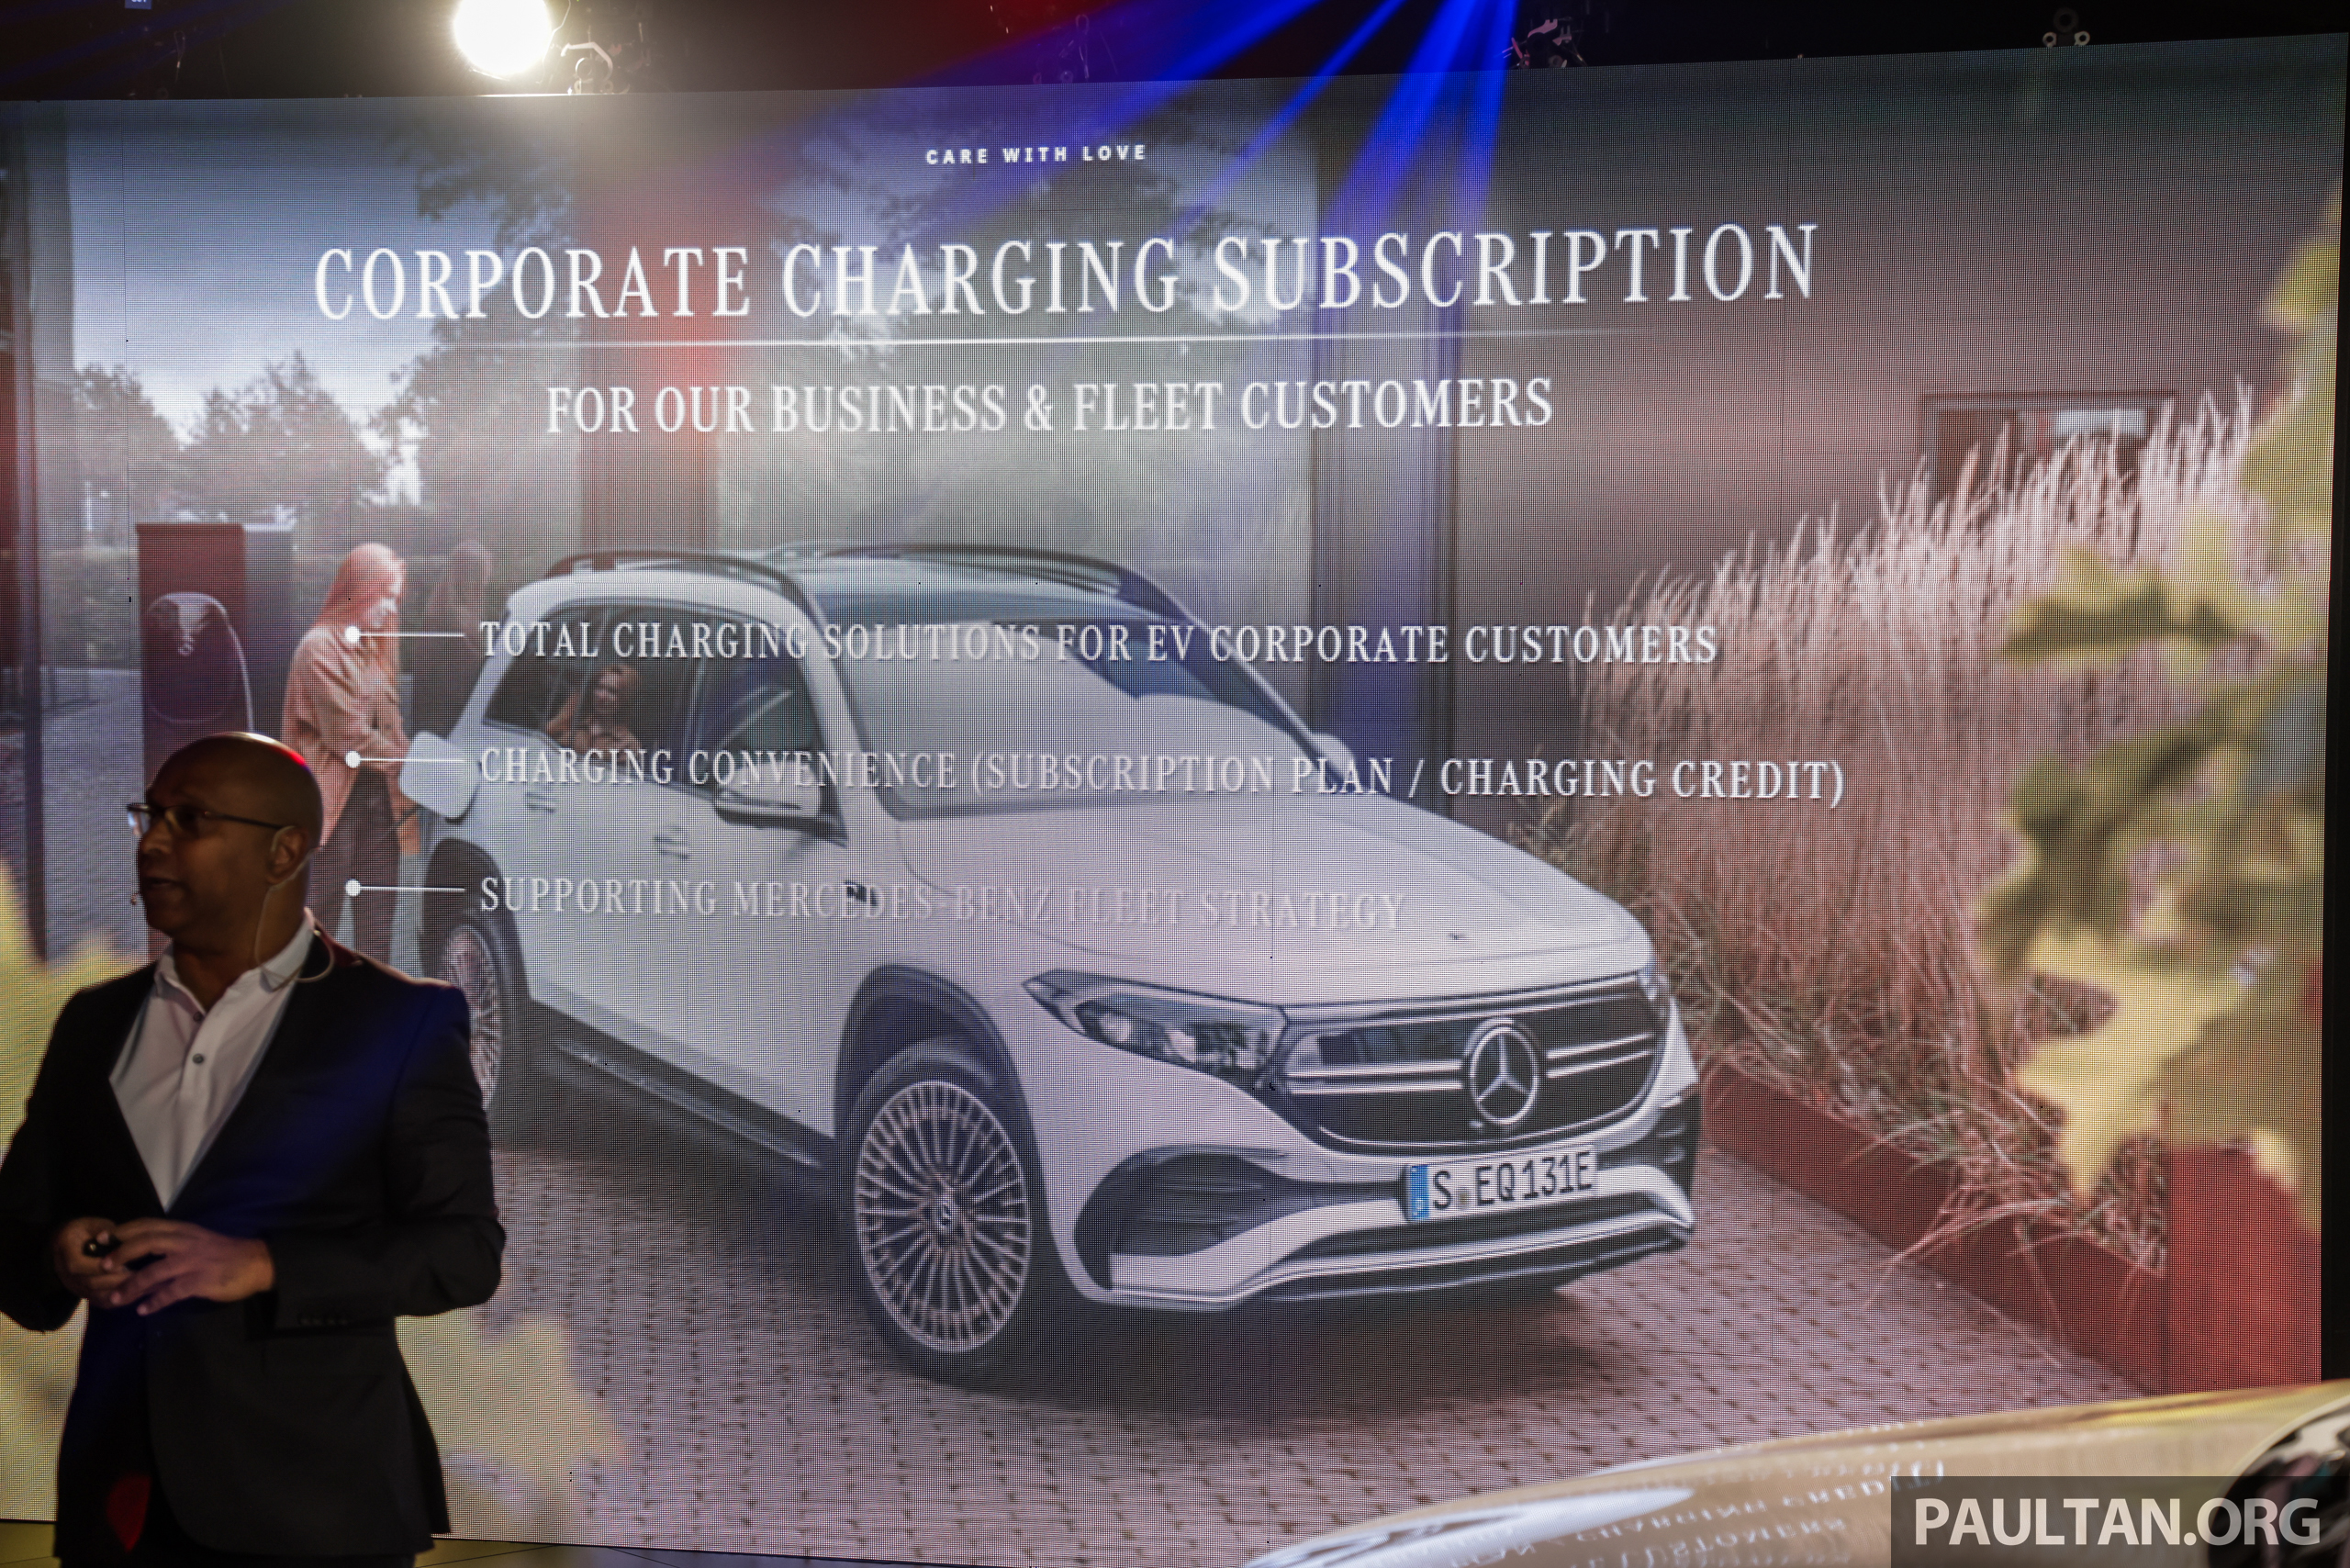 推进电动化转型！Mercedes-Benz Malaysia 计划通过旗下经销商扩充 DC 快速充电网络，但仅供自家电动车客户使用